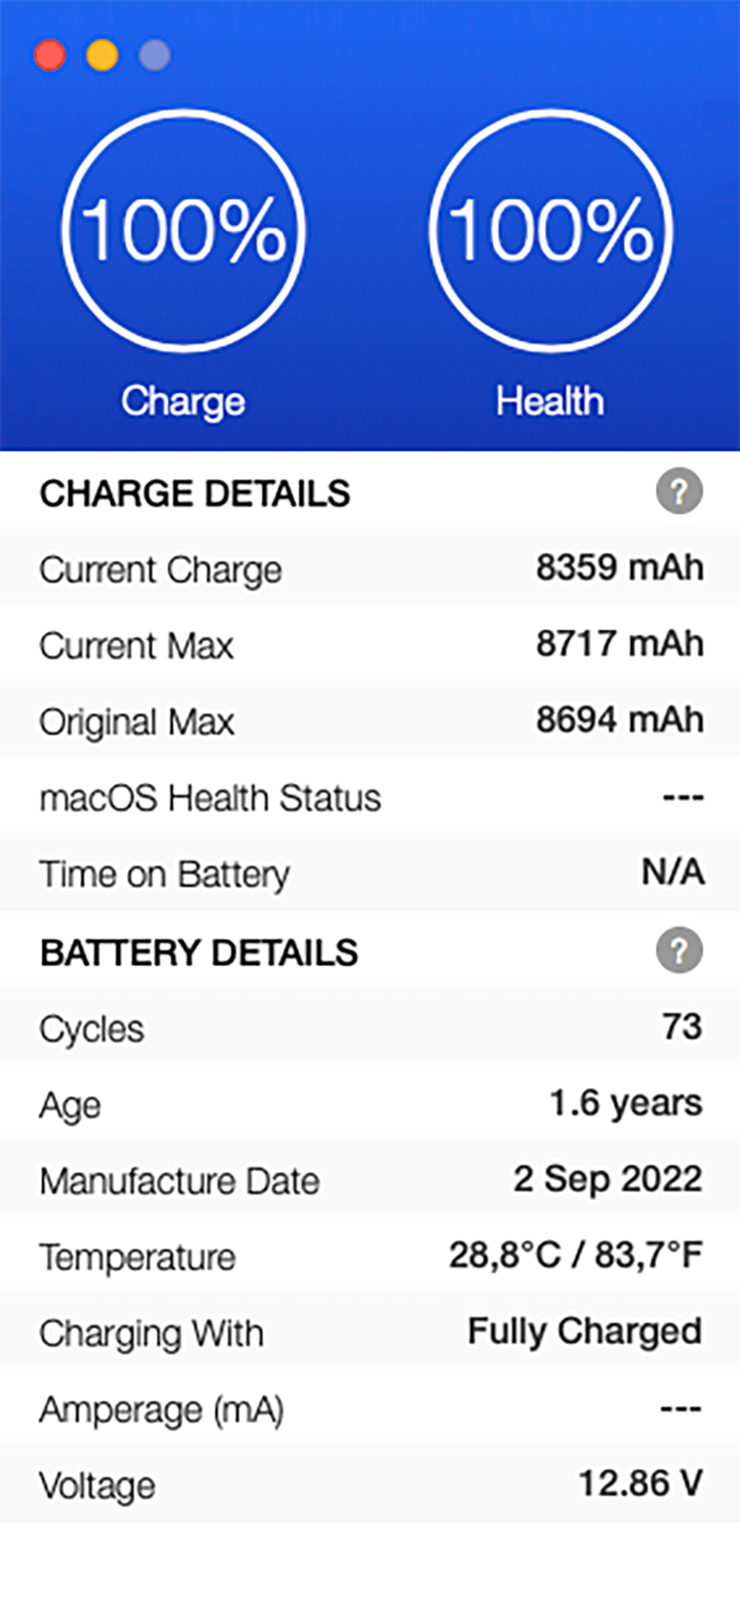 Battery Doctor расскажет про циклы перезарядки, возраст батареи, ее максимальную и реальную емкость и поможет определить, если батарею в ноутбуке меняли